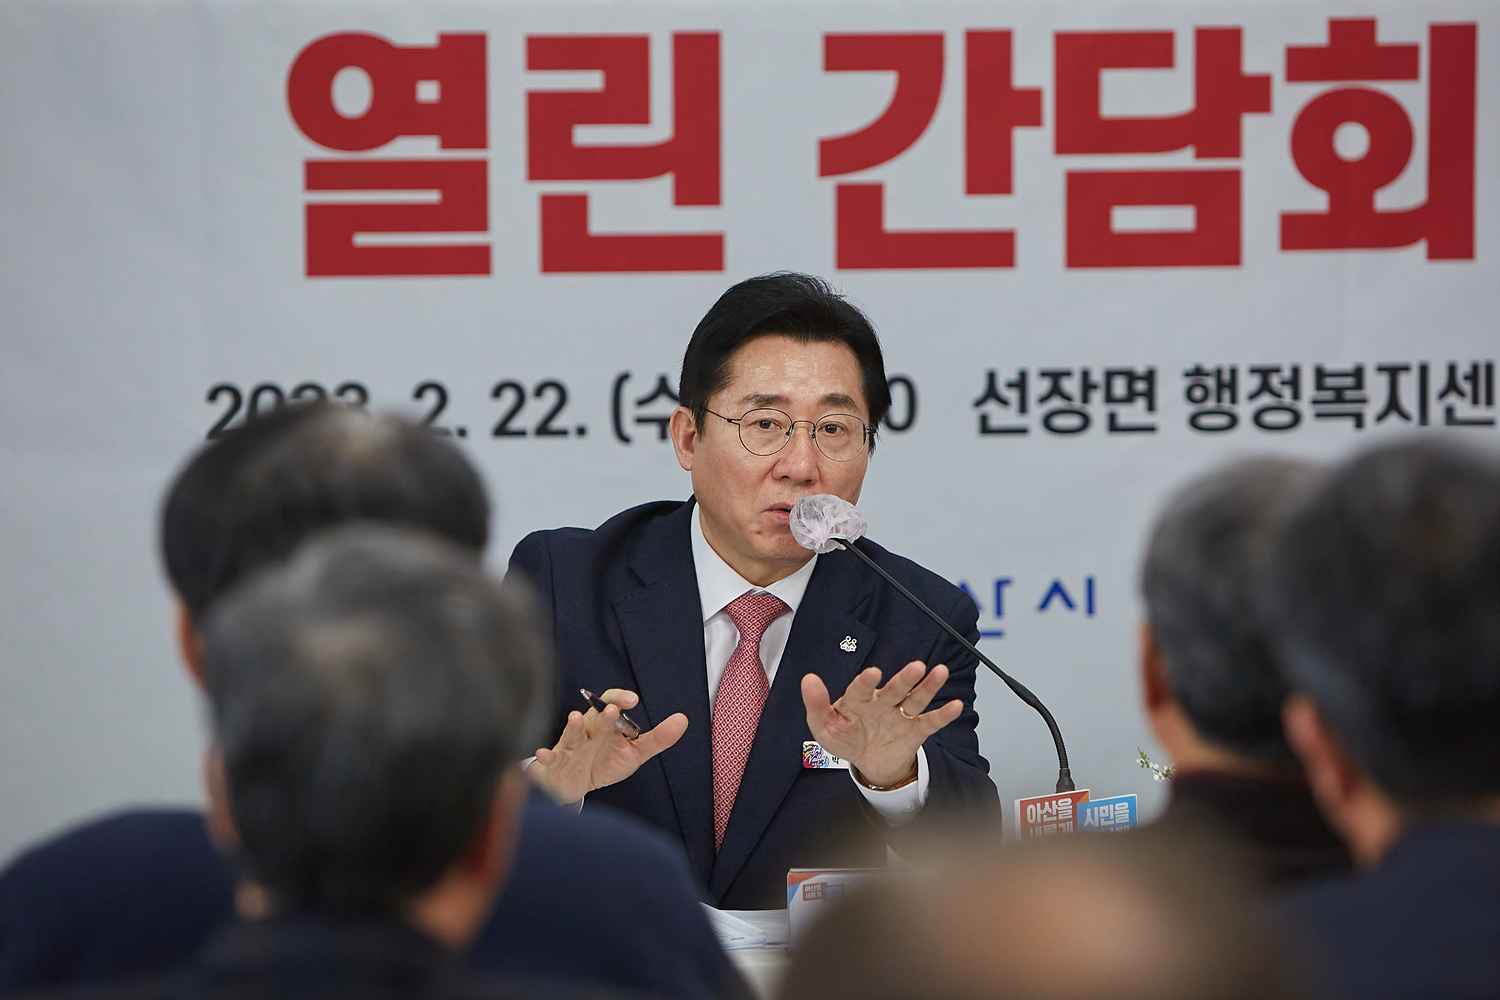 박경귀 아산시장 “선장에 서부권 균형발전 전략과 연계한 큰 그림 그려 나갈 것” 관련사진